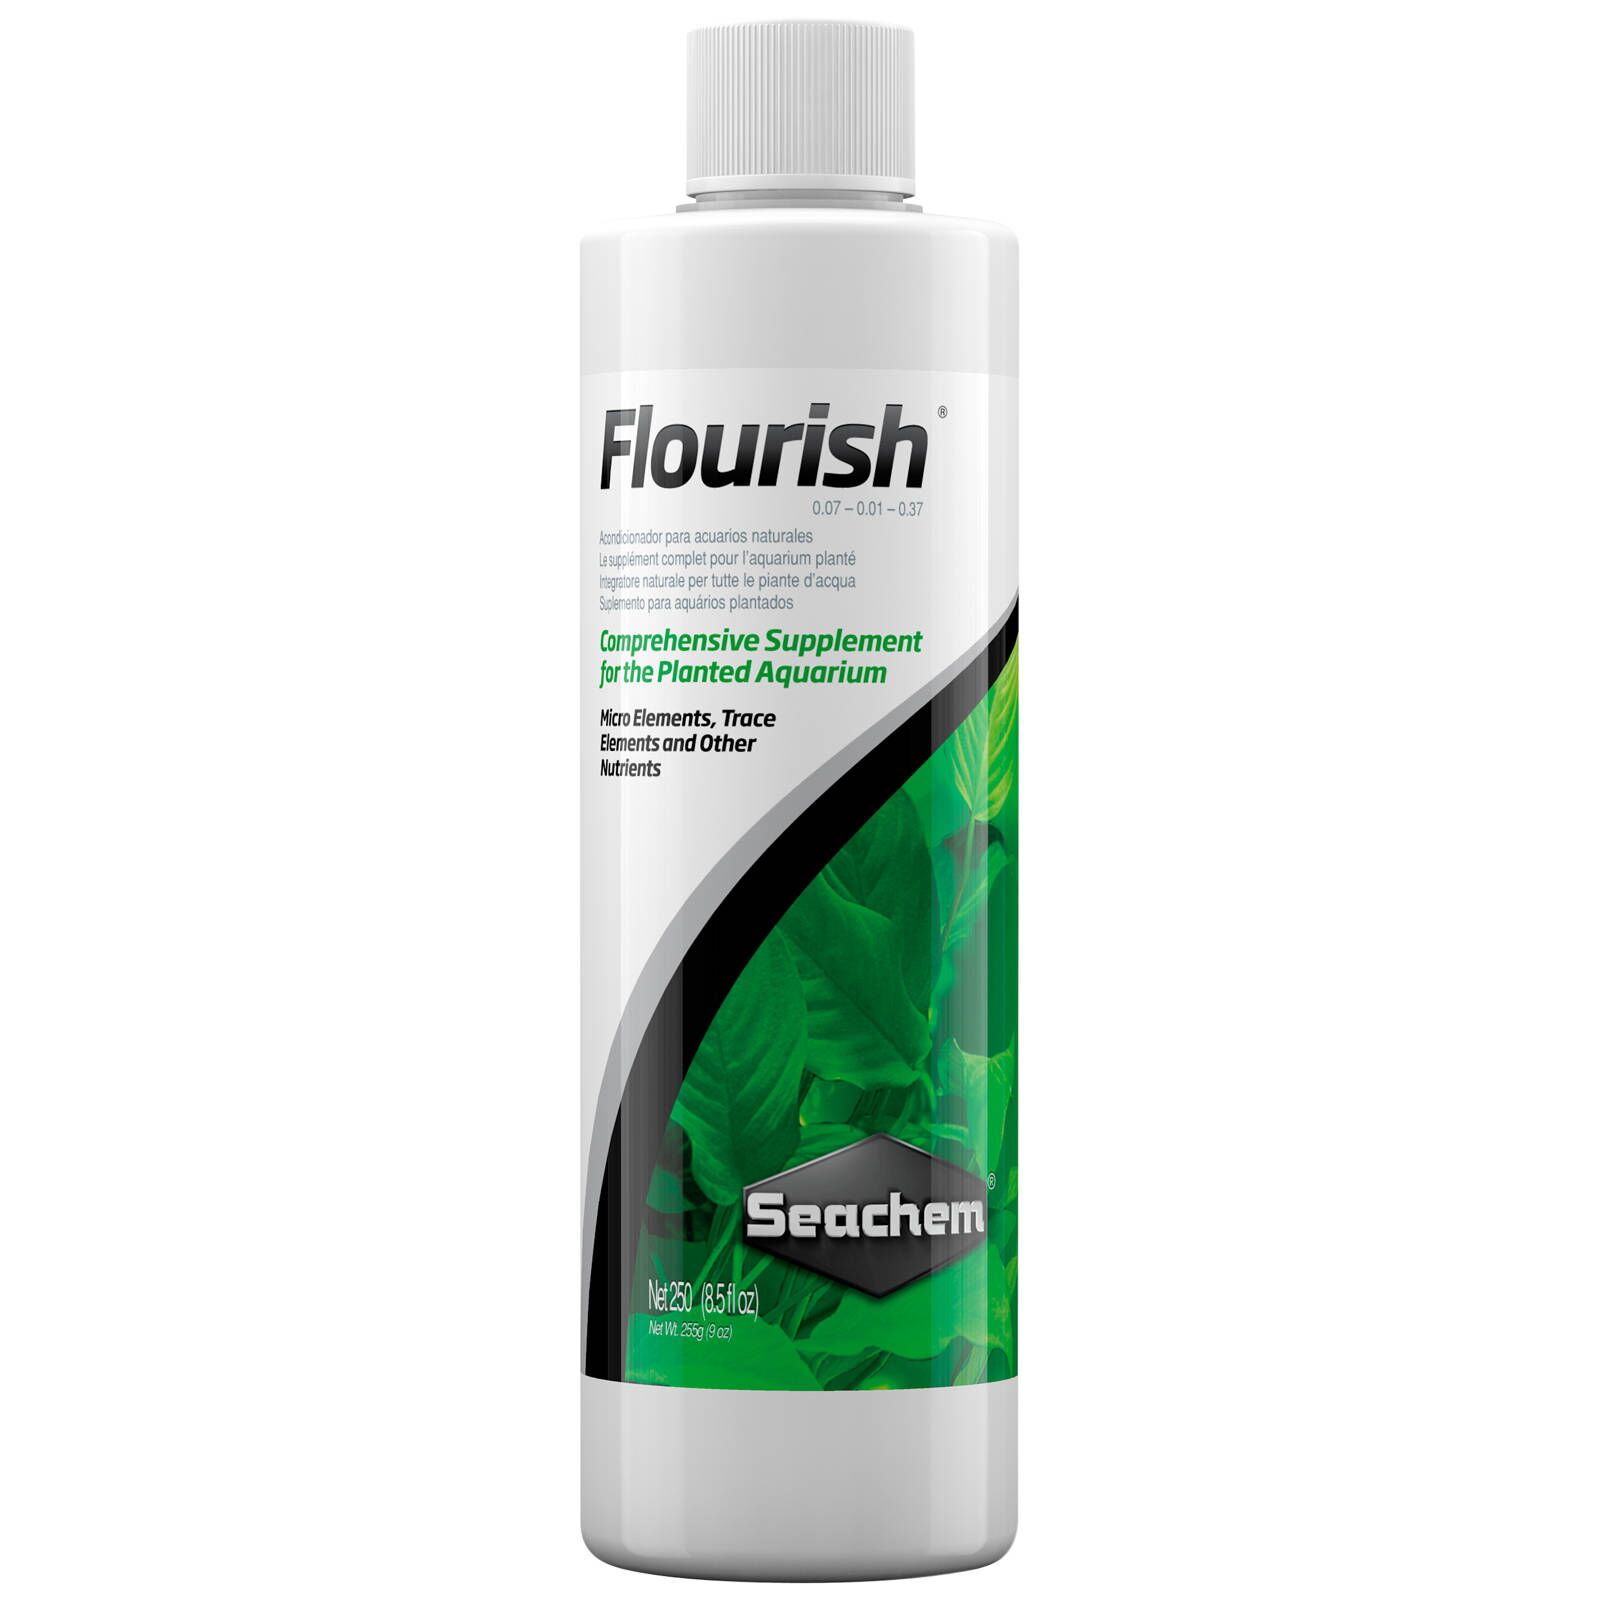 Seachem - Flourish